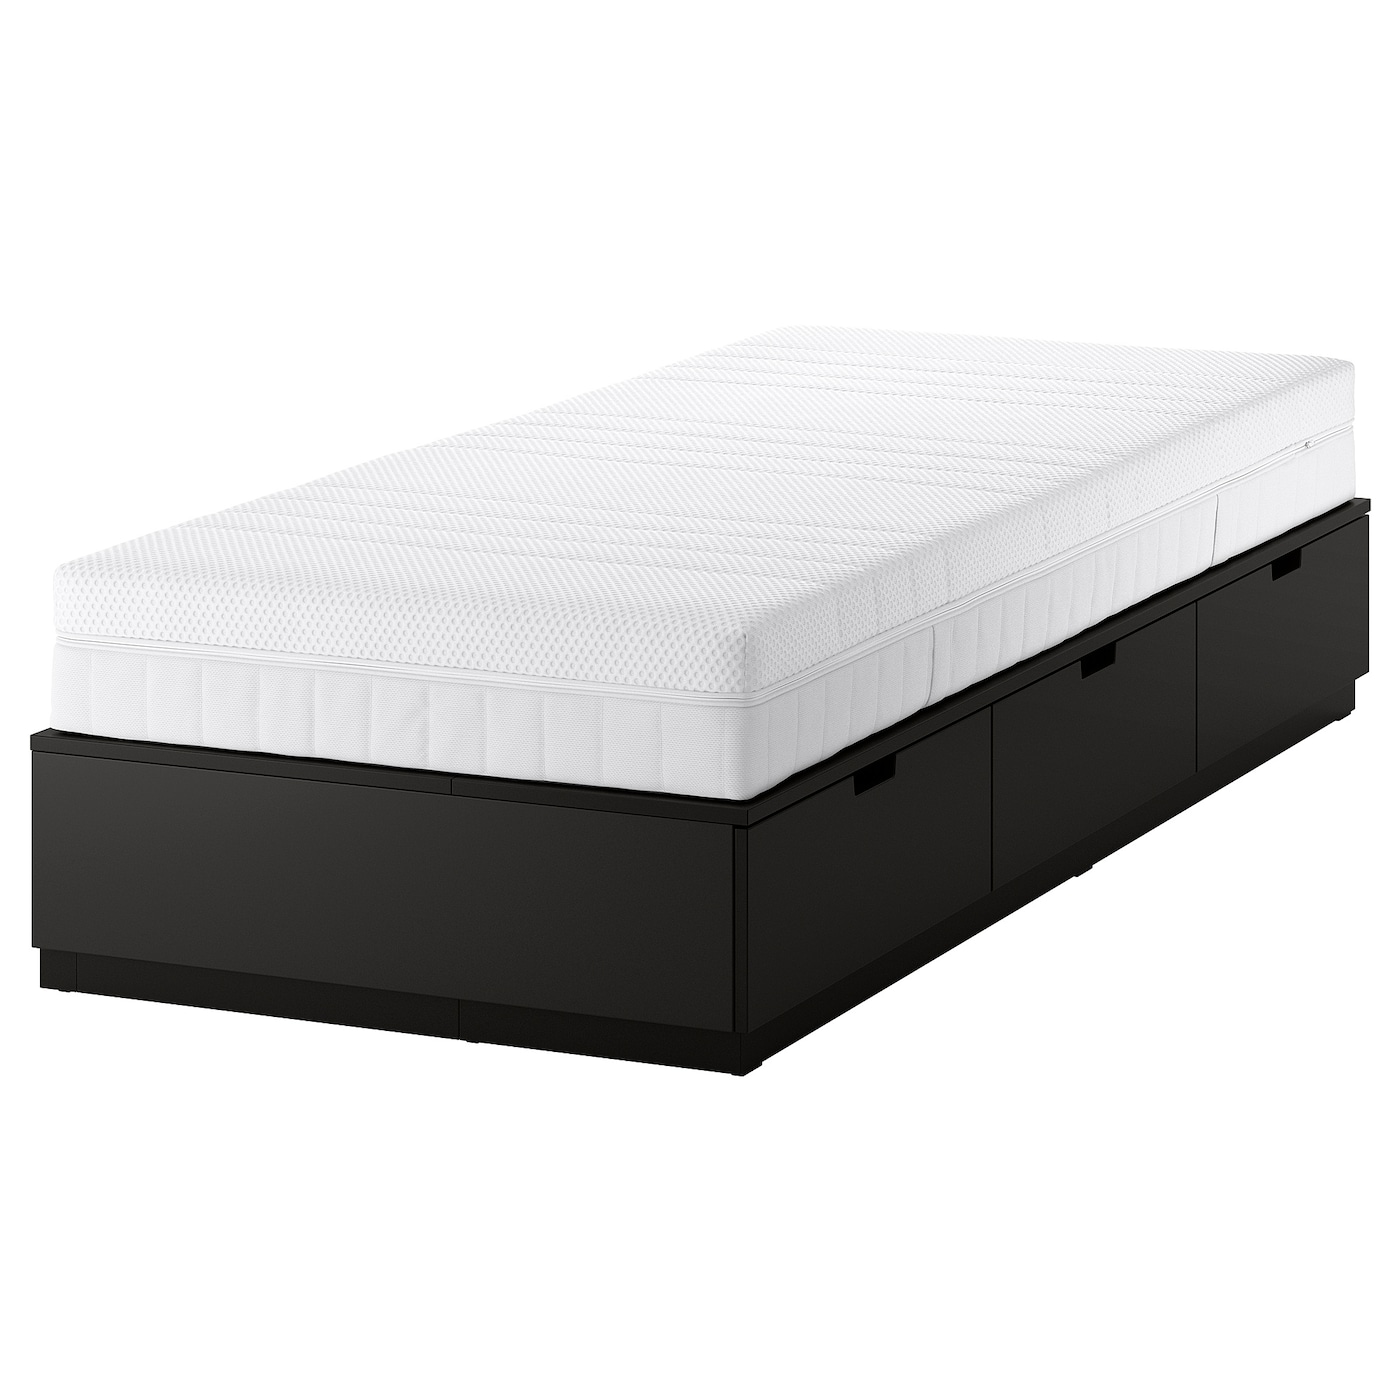 Каркас кровати с местом для хранения и матрасом - IKEA NORDLI, 200х90 см, матрас средне-жесткий, черный, НОРДЛИ ИКЕА